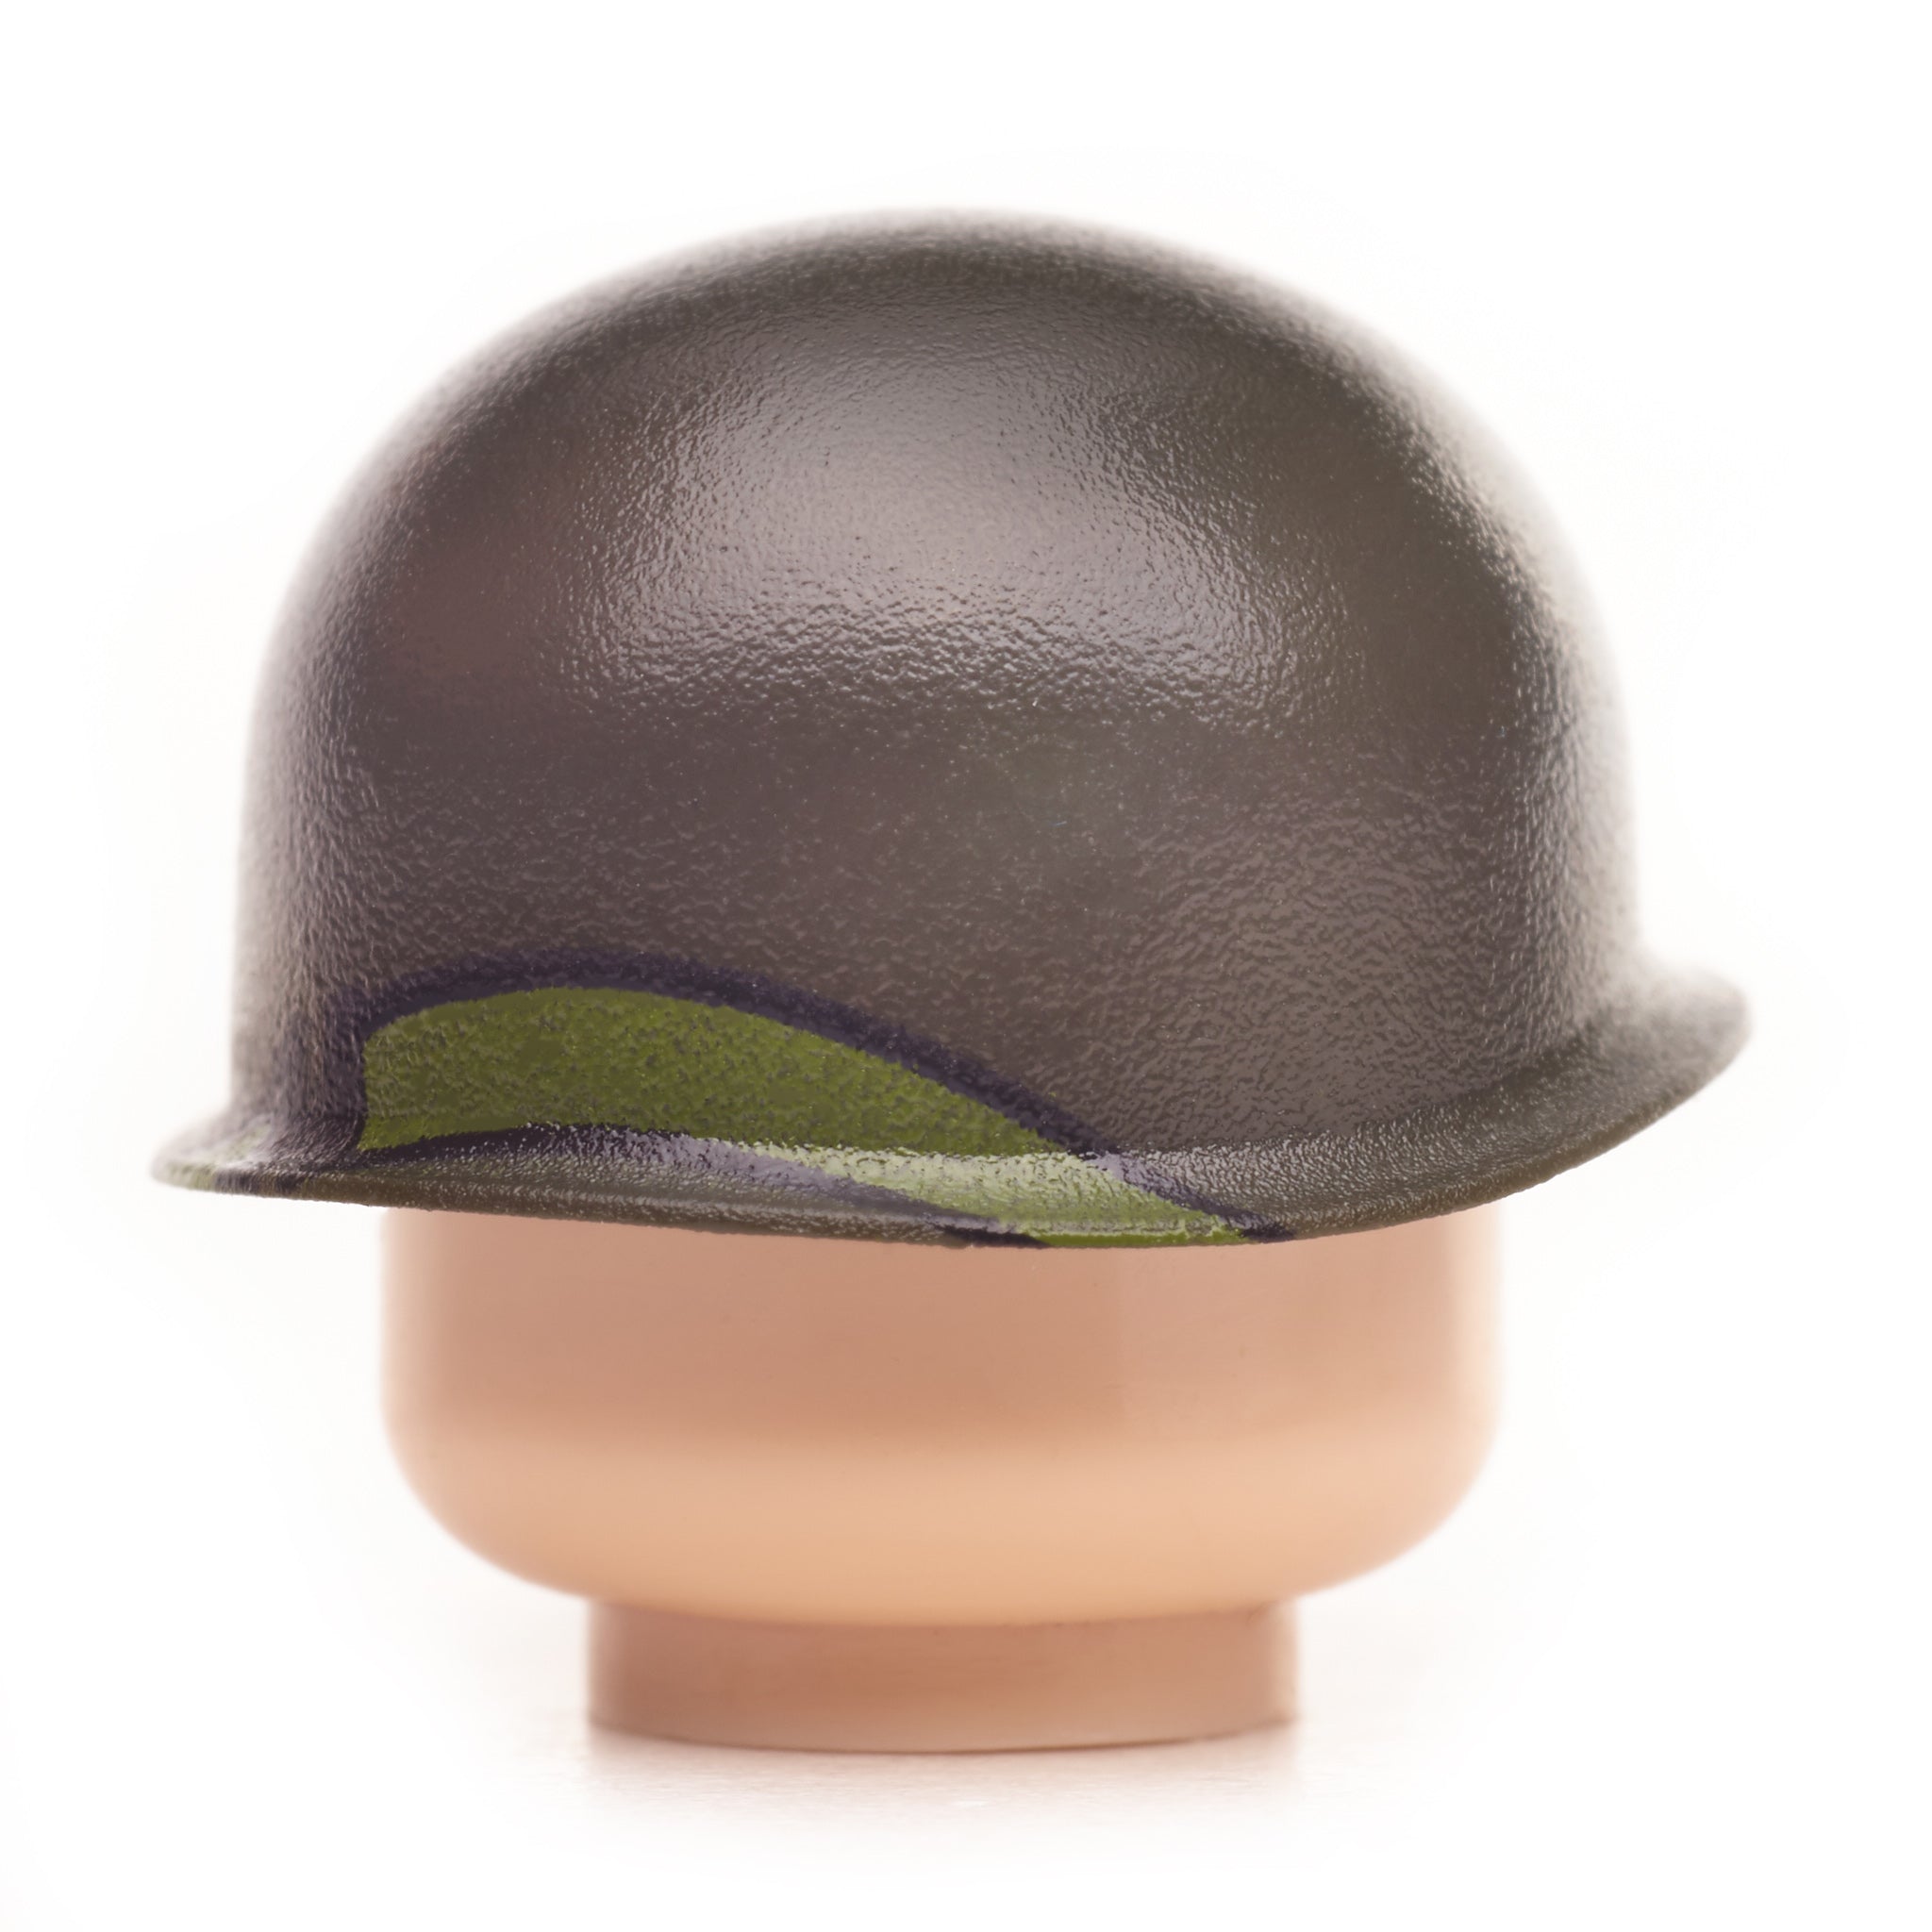 25th Infantry Division M1 Helmet